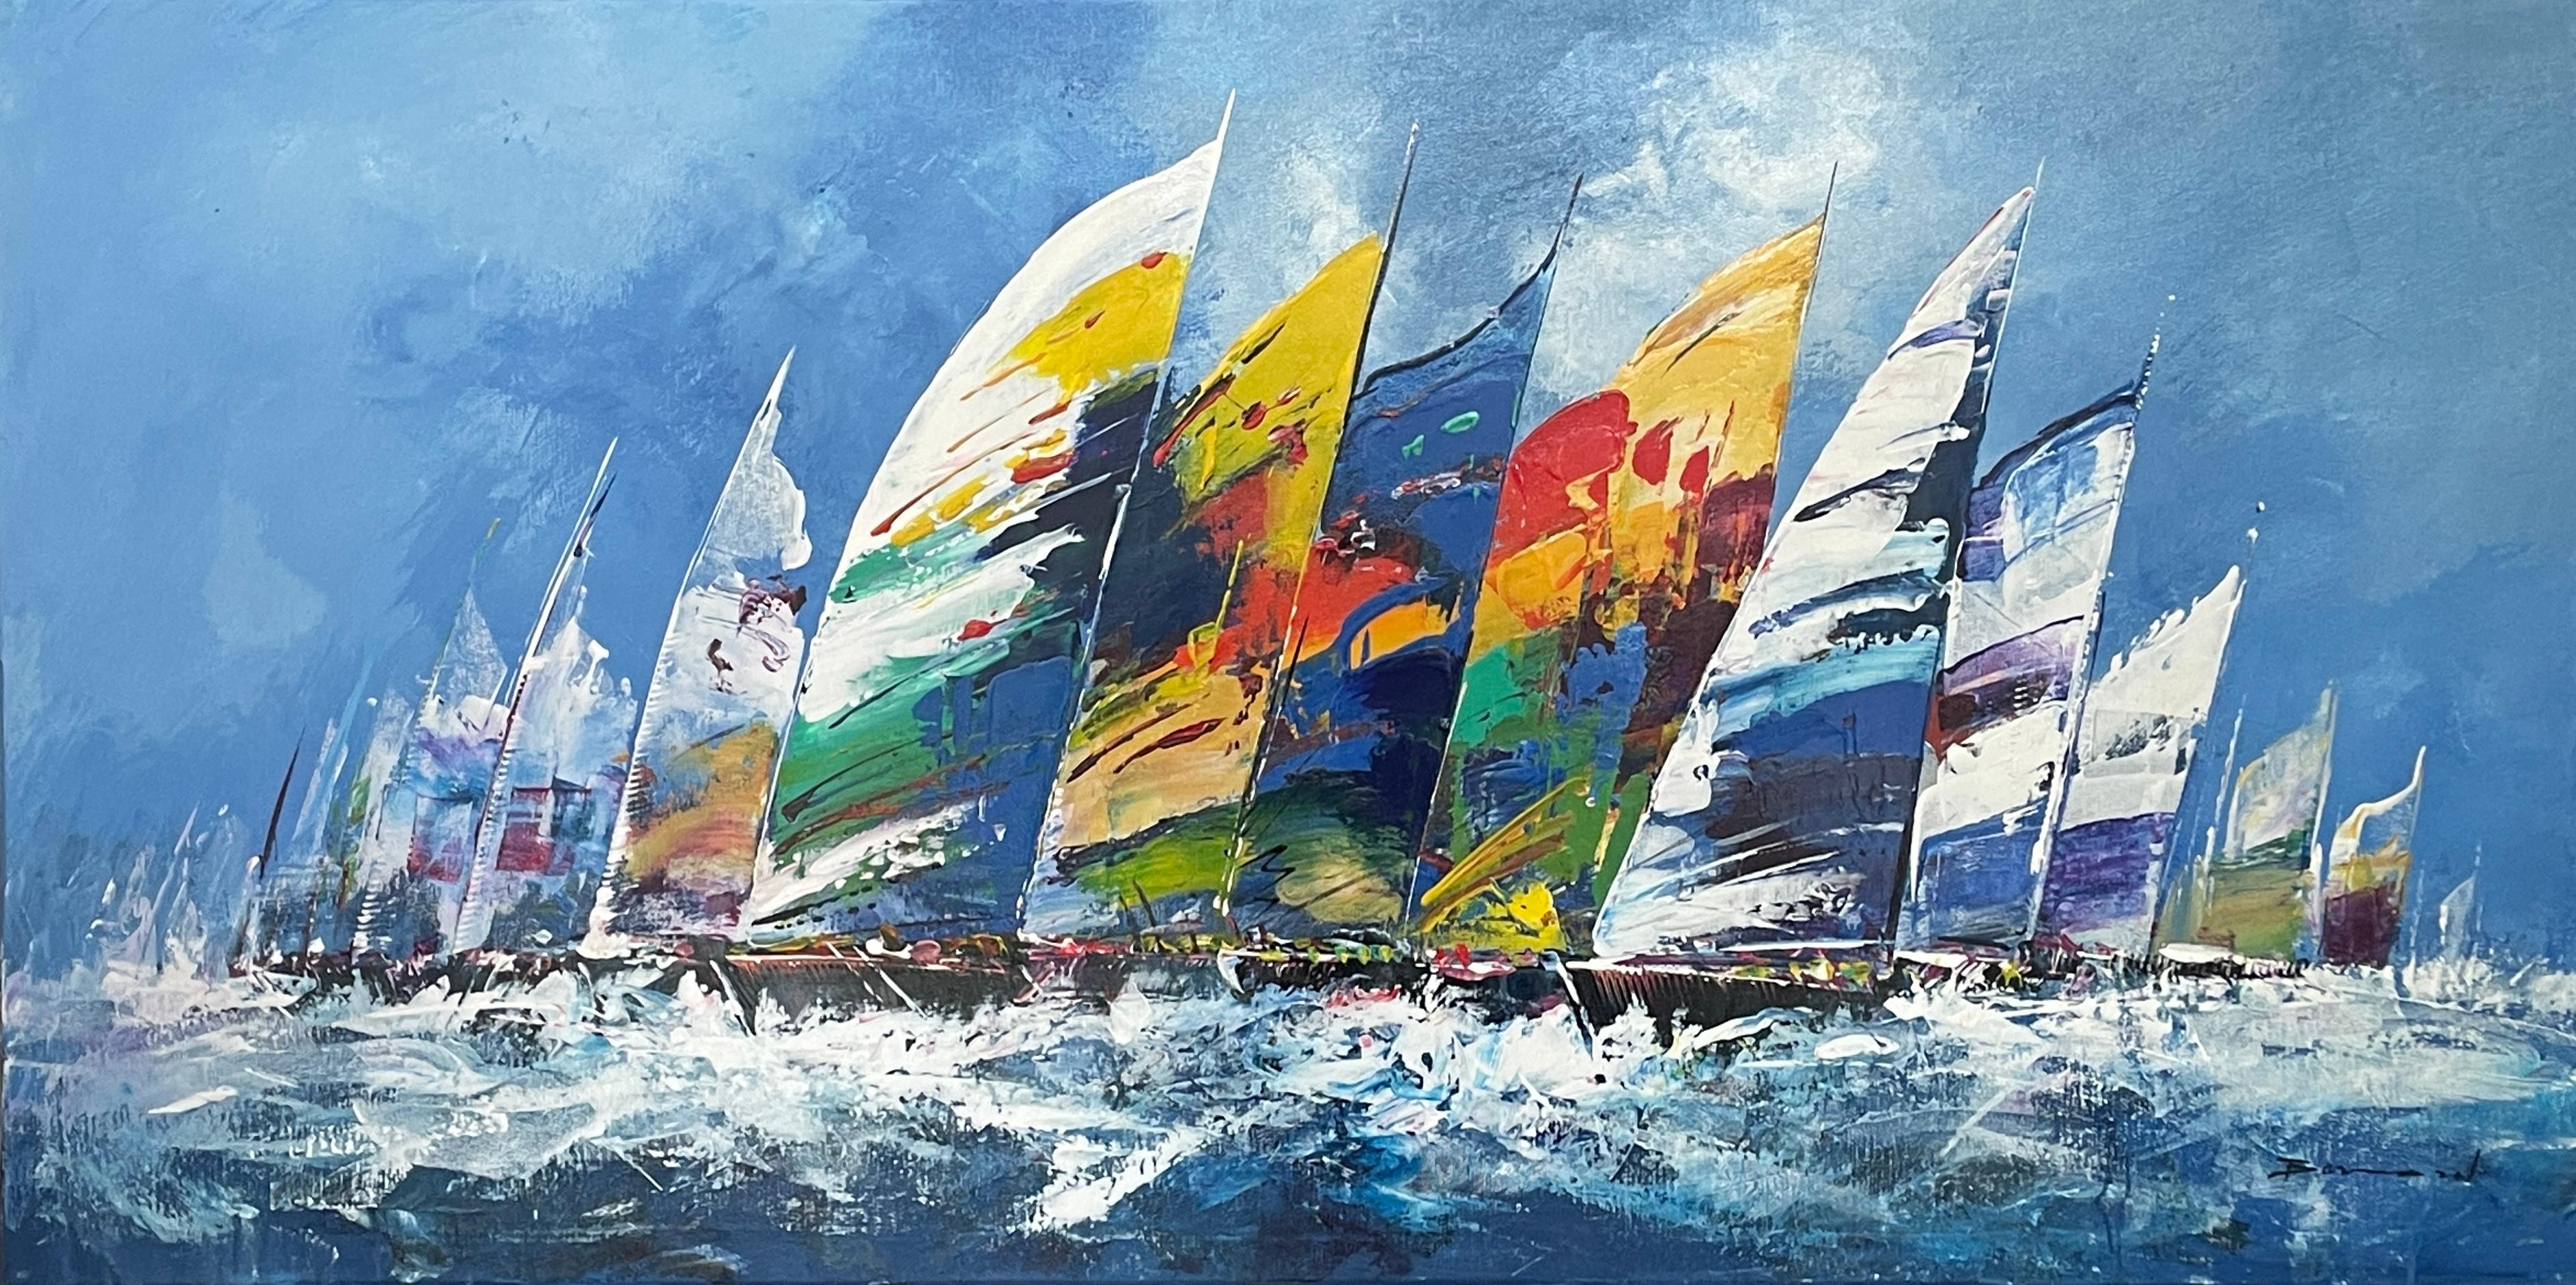 Bernard Landscape Painting – Zeitgenössisches farbenfrohes Gemälde „Seiling to the Seas“ mit Segelbooten auf dem Wasser